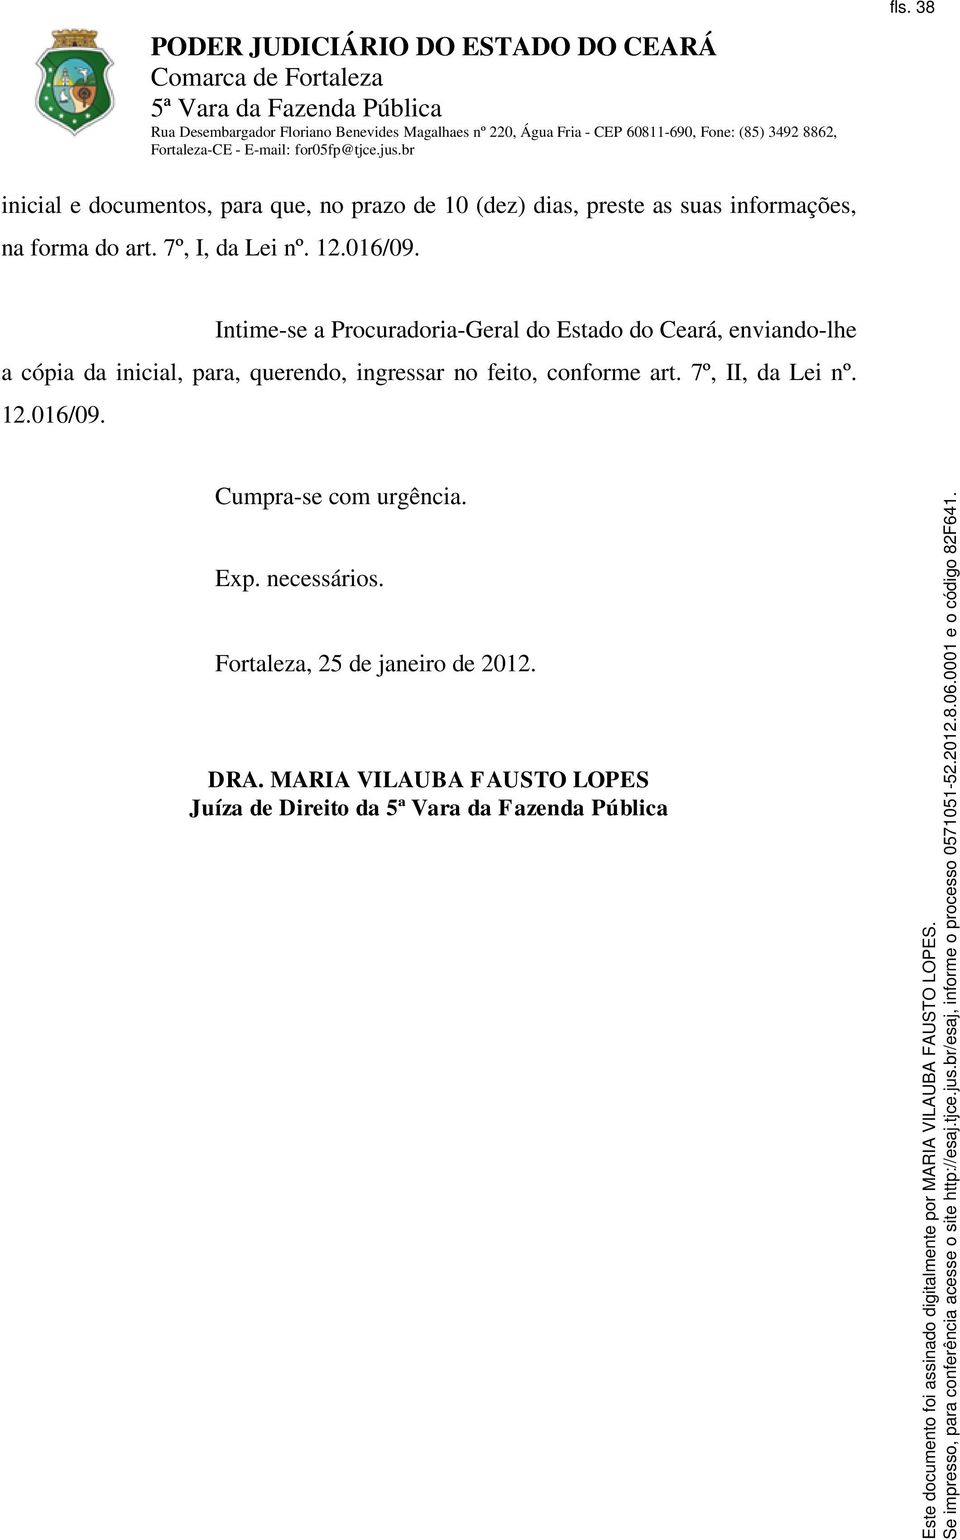 Intime-se a Procuradoria-Geral do Estado do Ceará, enviando-lhe a cópia da inicial, para, querendo,